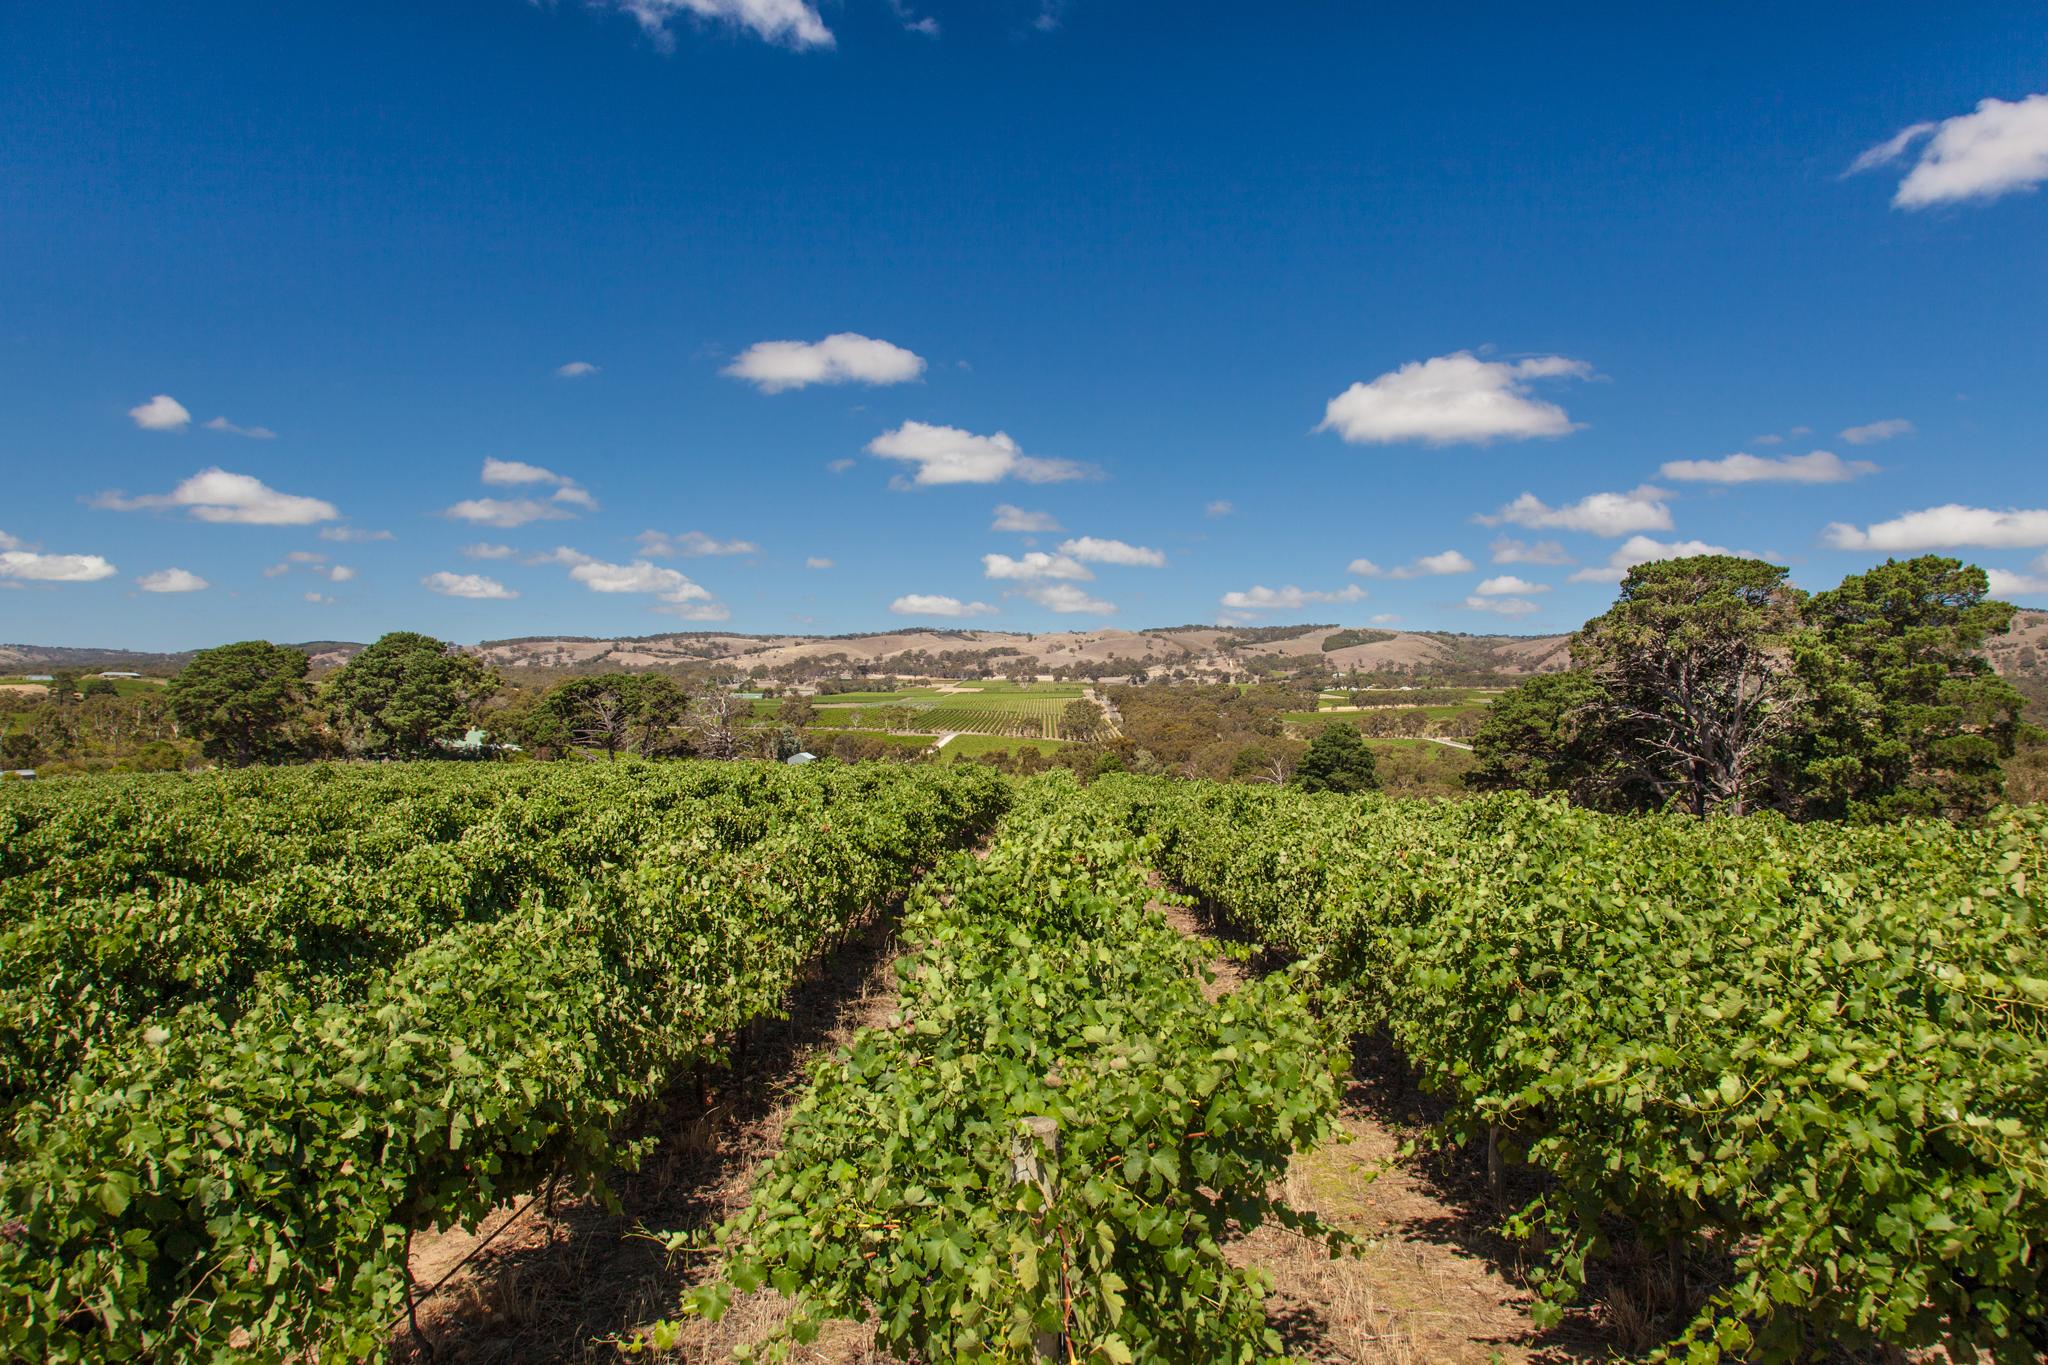 The vineyards of McLaren Vale